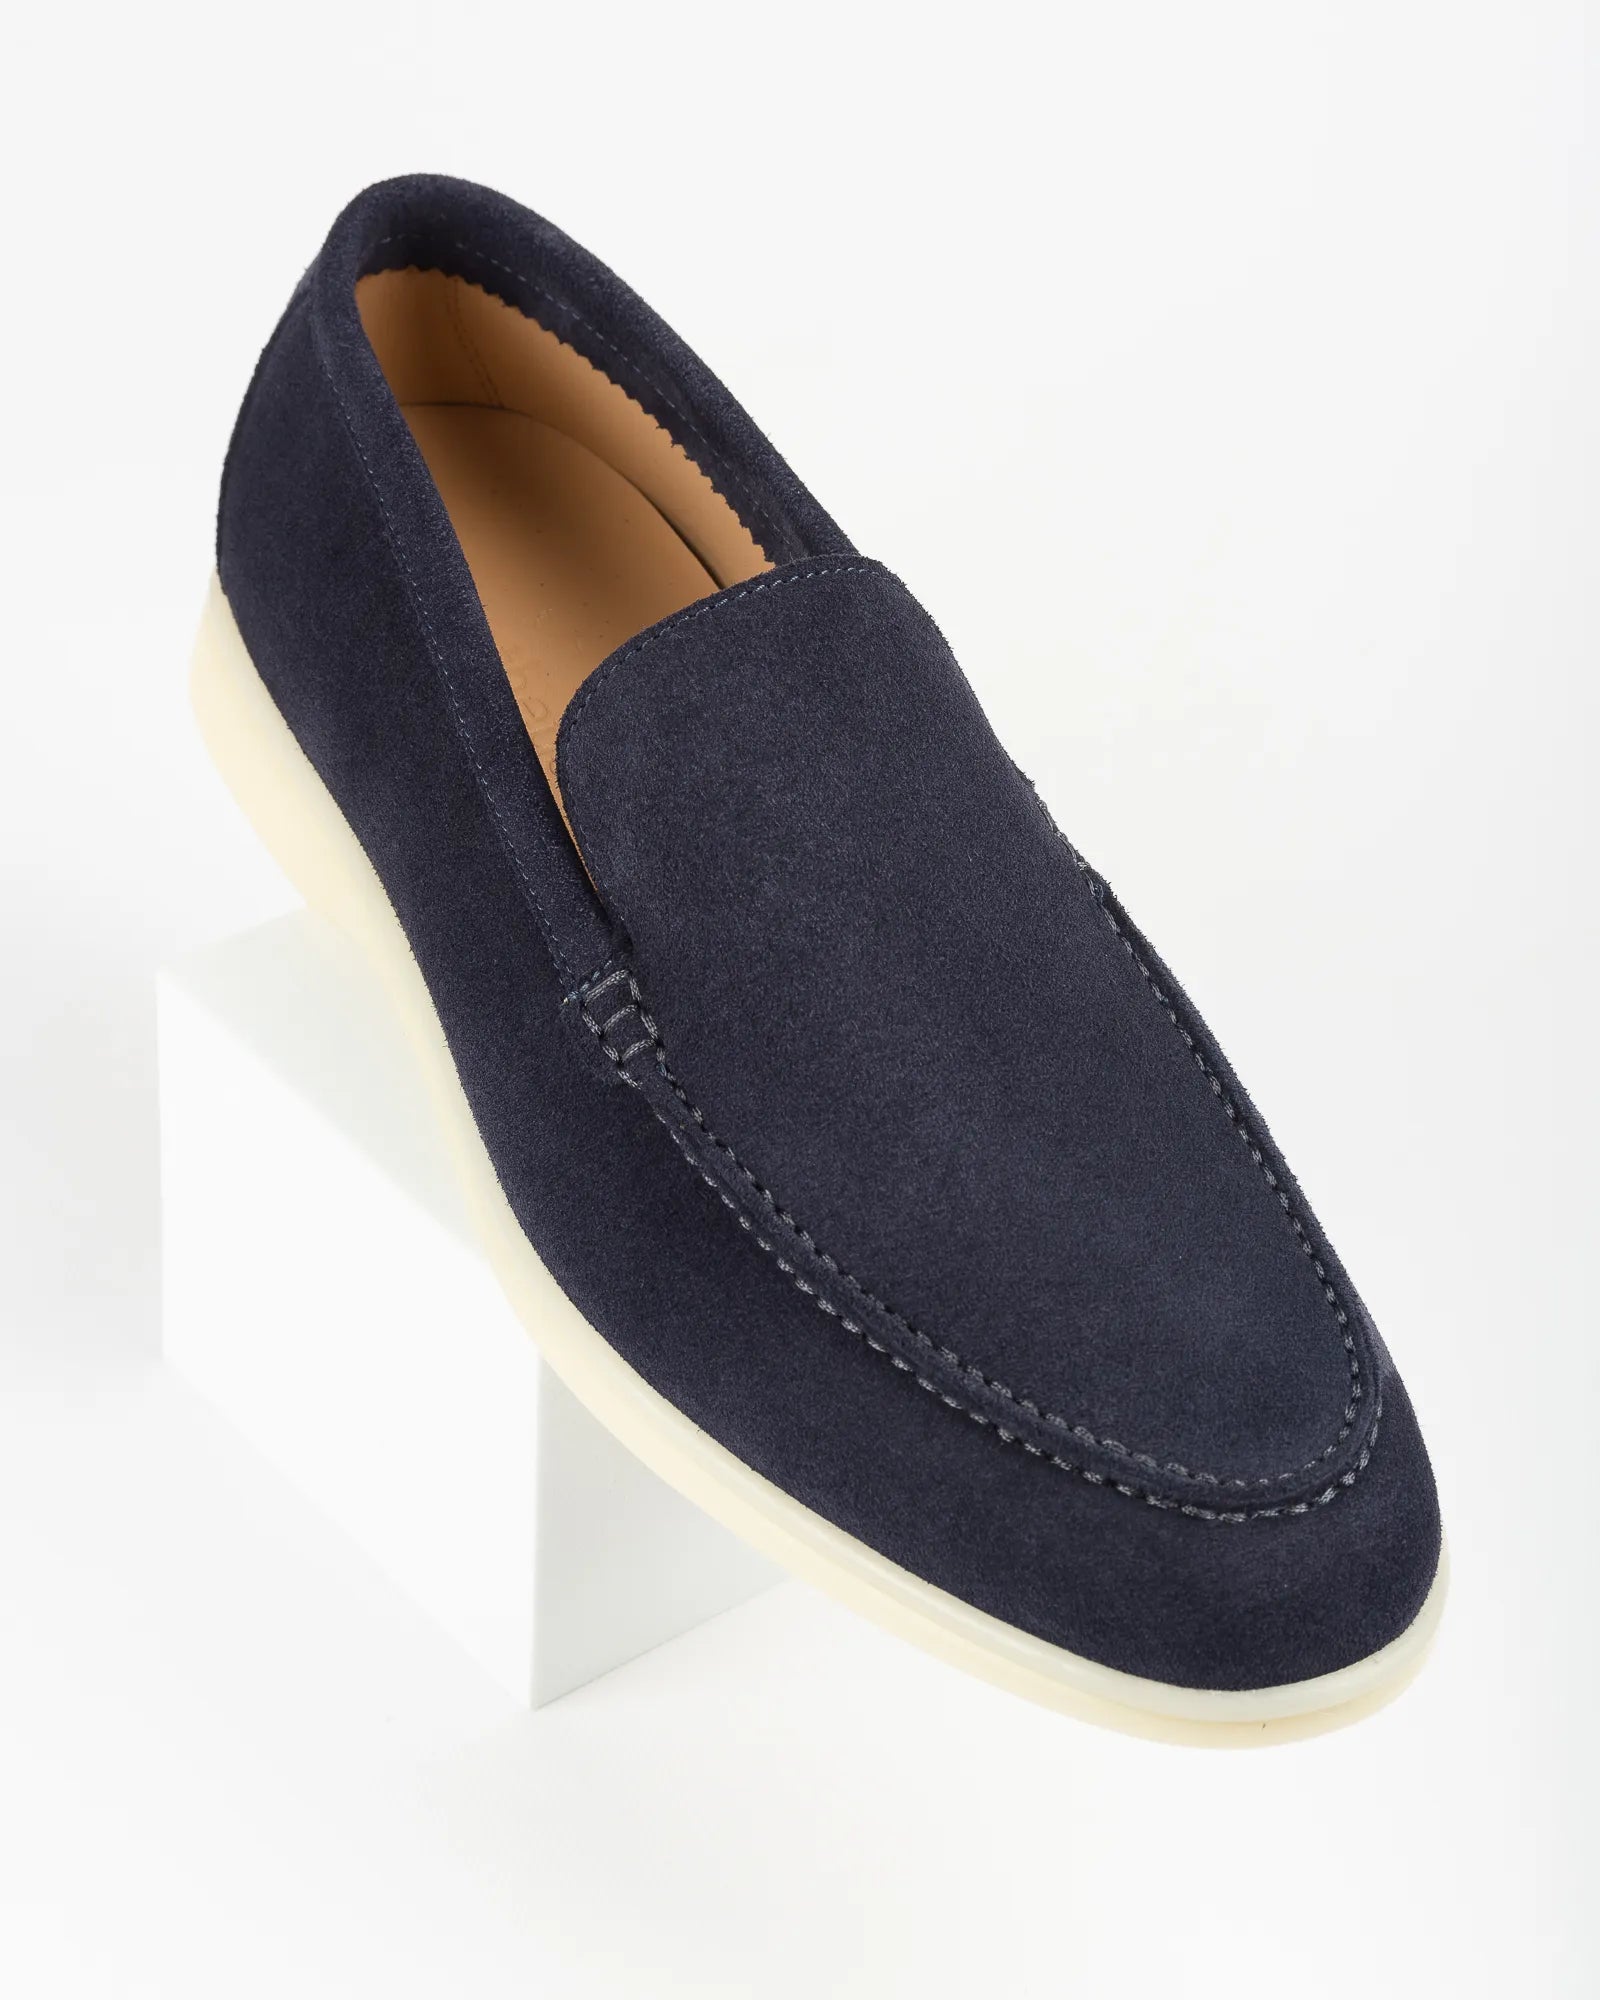 Men's Genuine Suede Loafers Moccasins Blue Violet